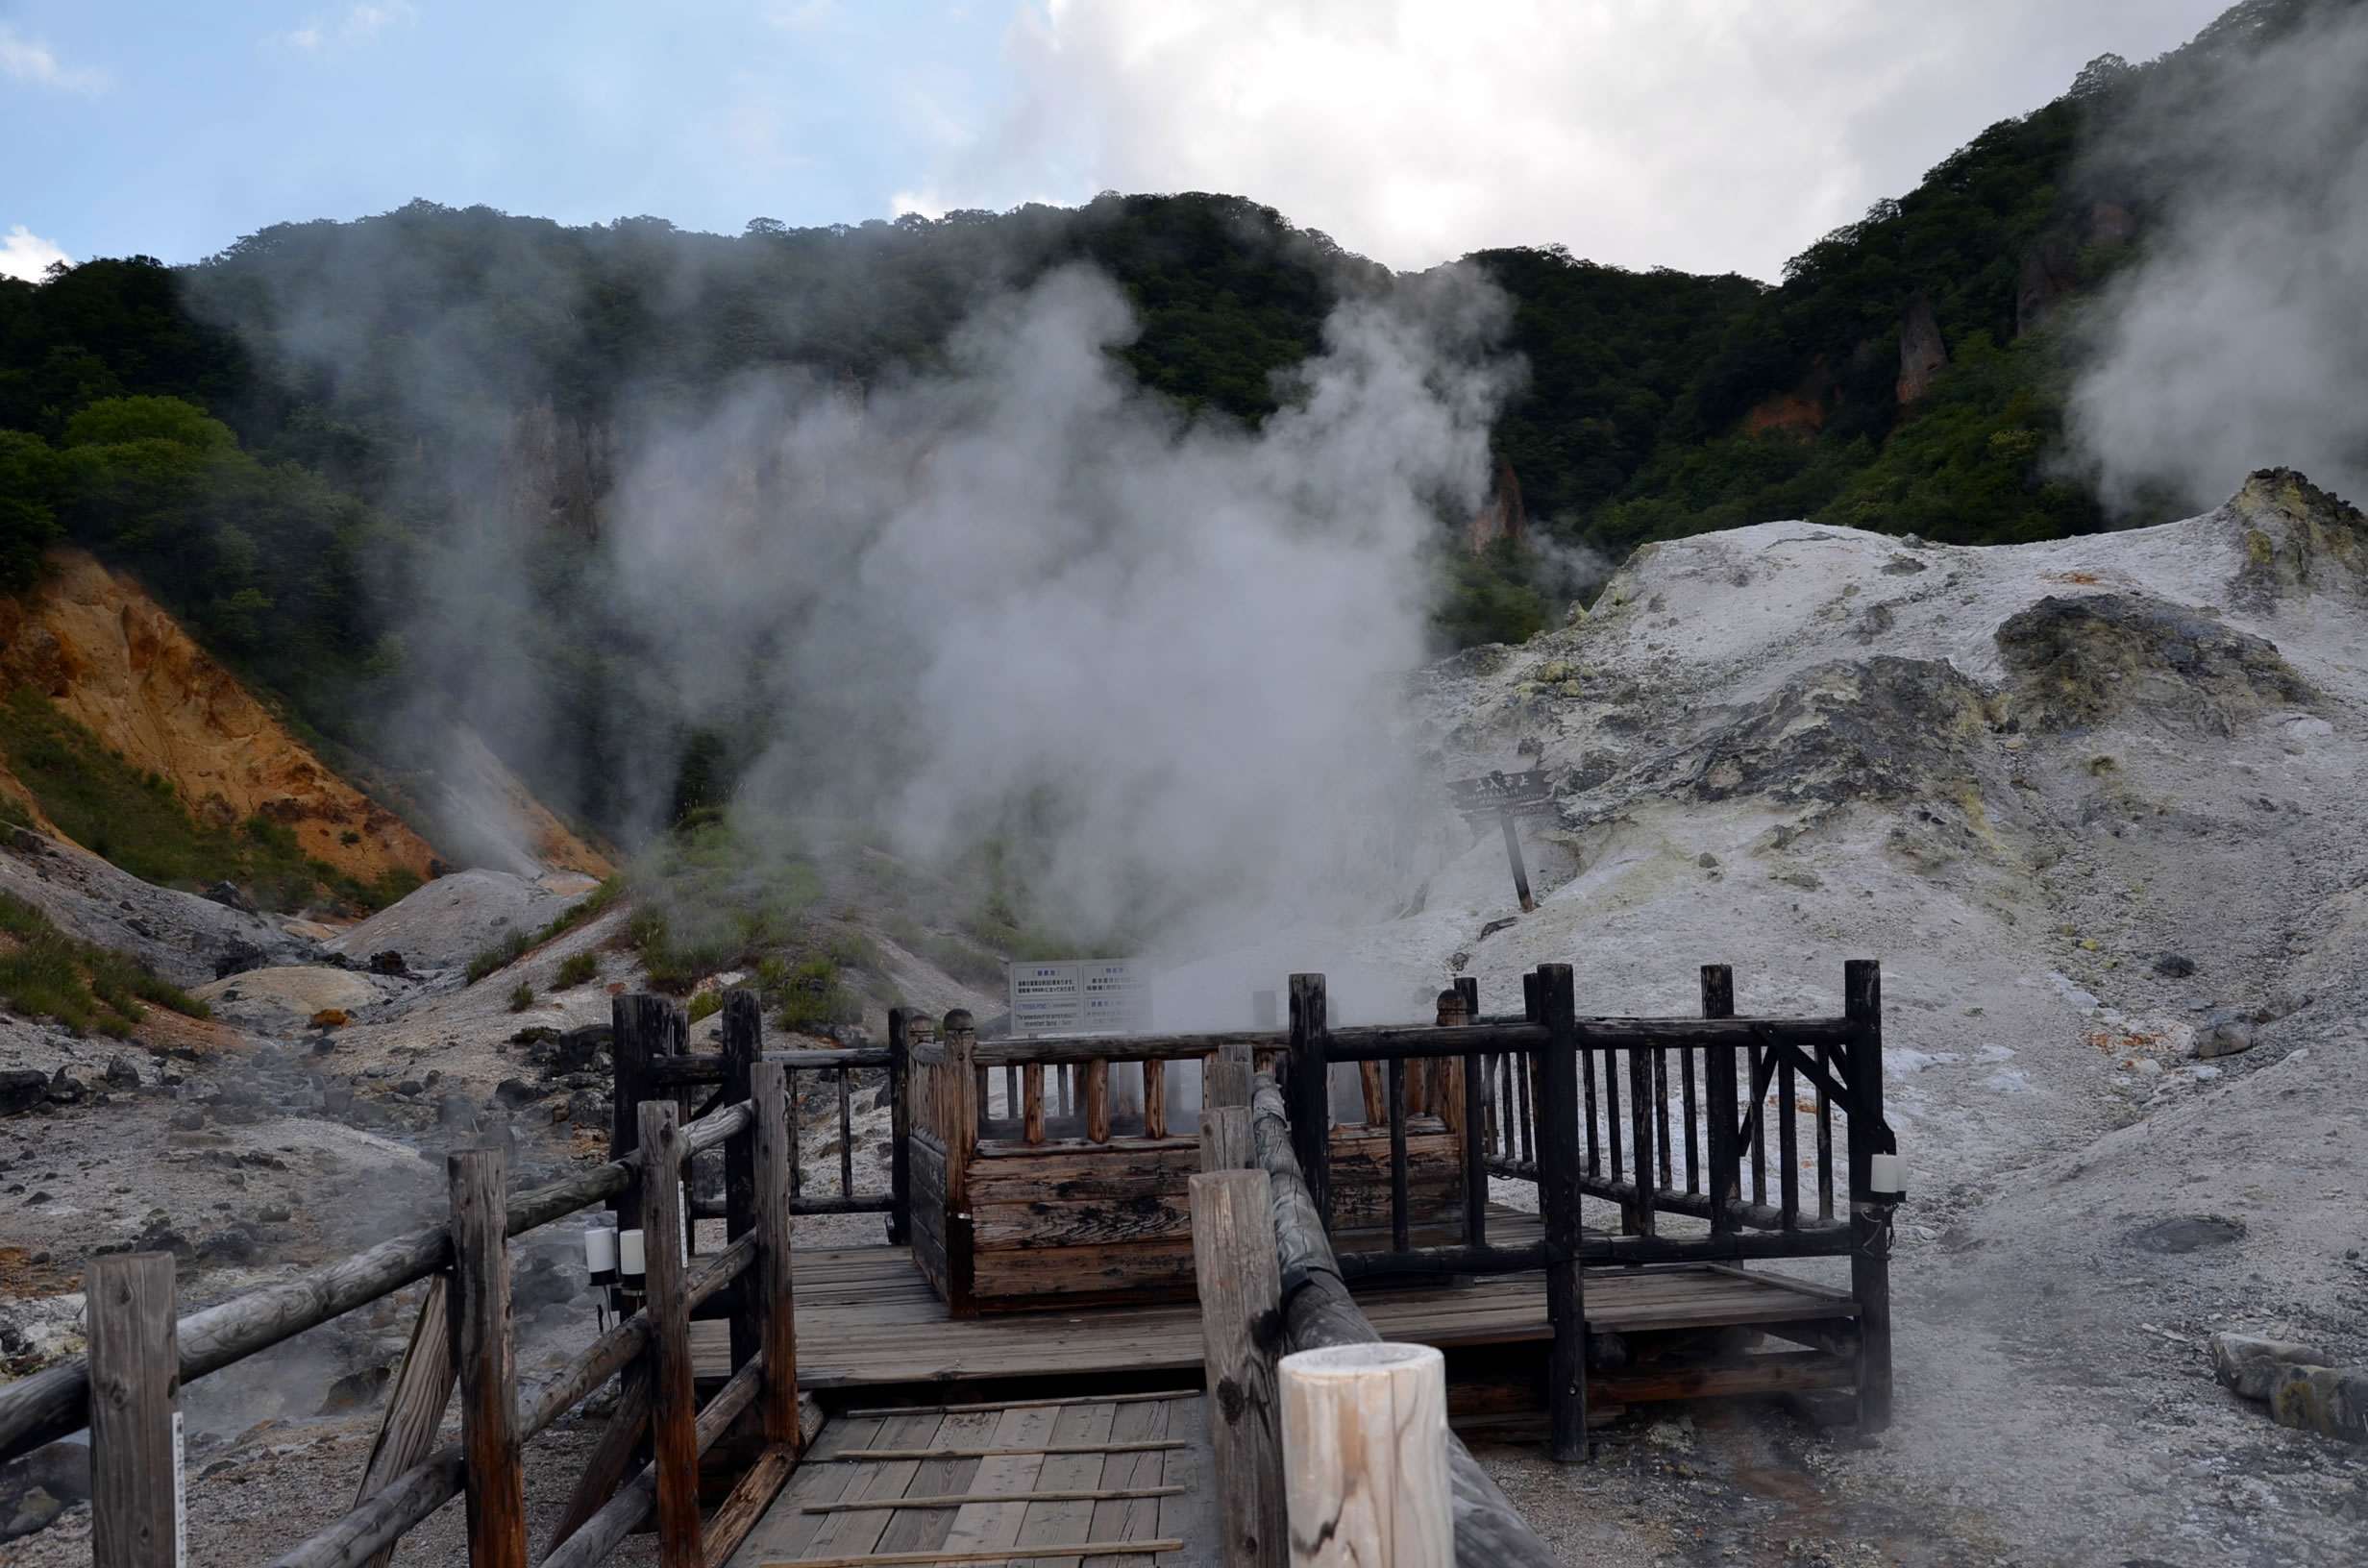 「鉄泉池」登別温泉地獄谷の中央に位置する間欠泉｡湯煙をあげて煮えたぎる様子を間近で見ることができます｡